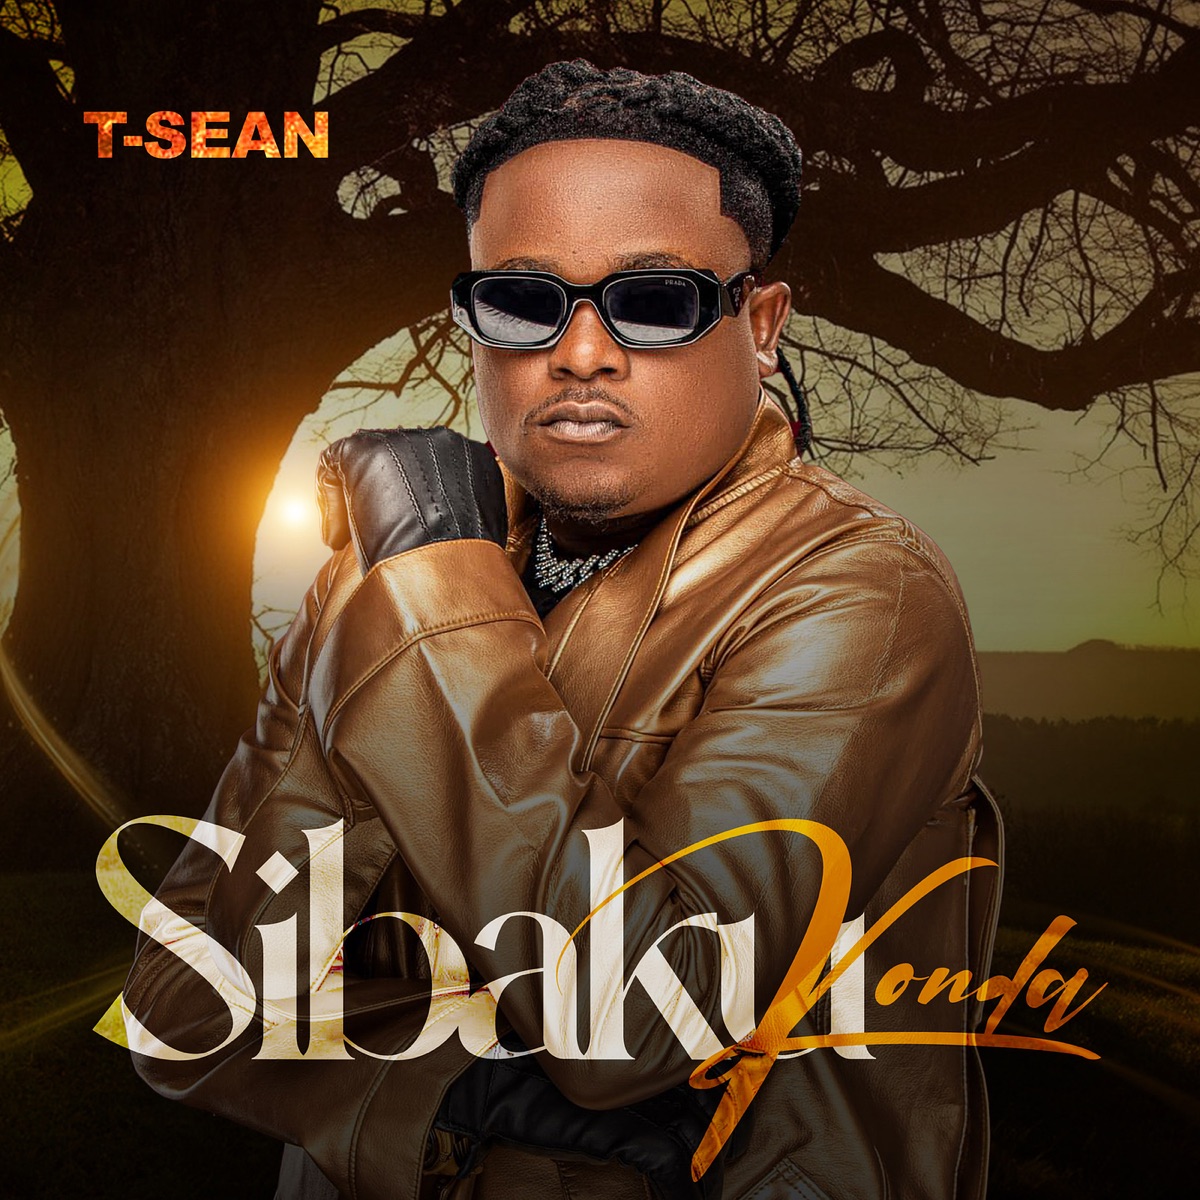 T-Sean - Sibakukonda